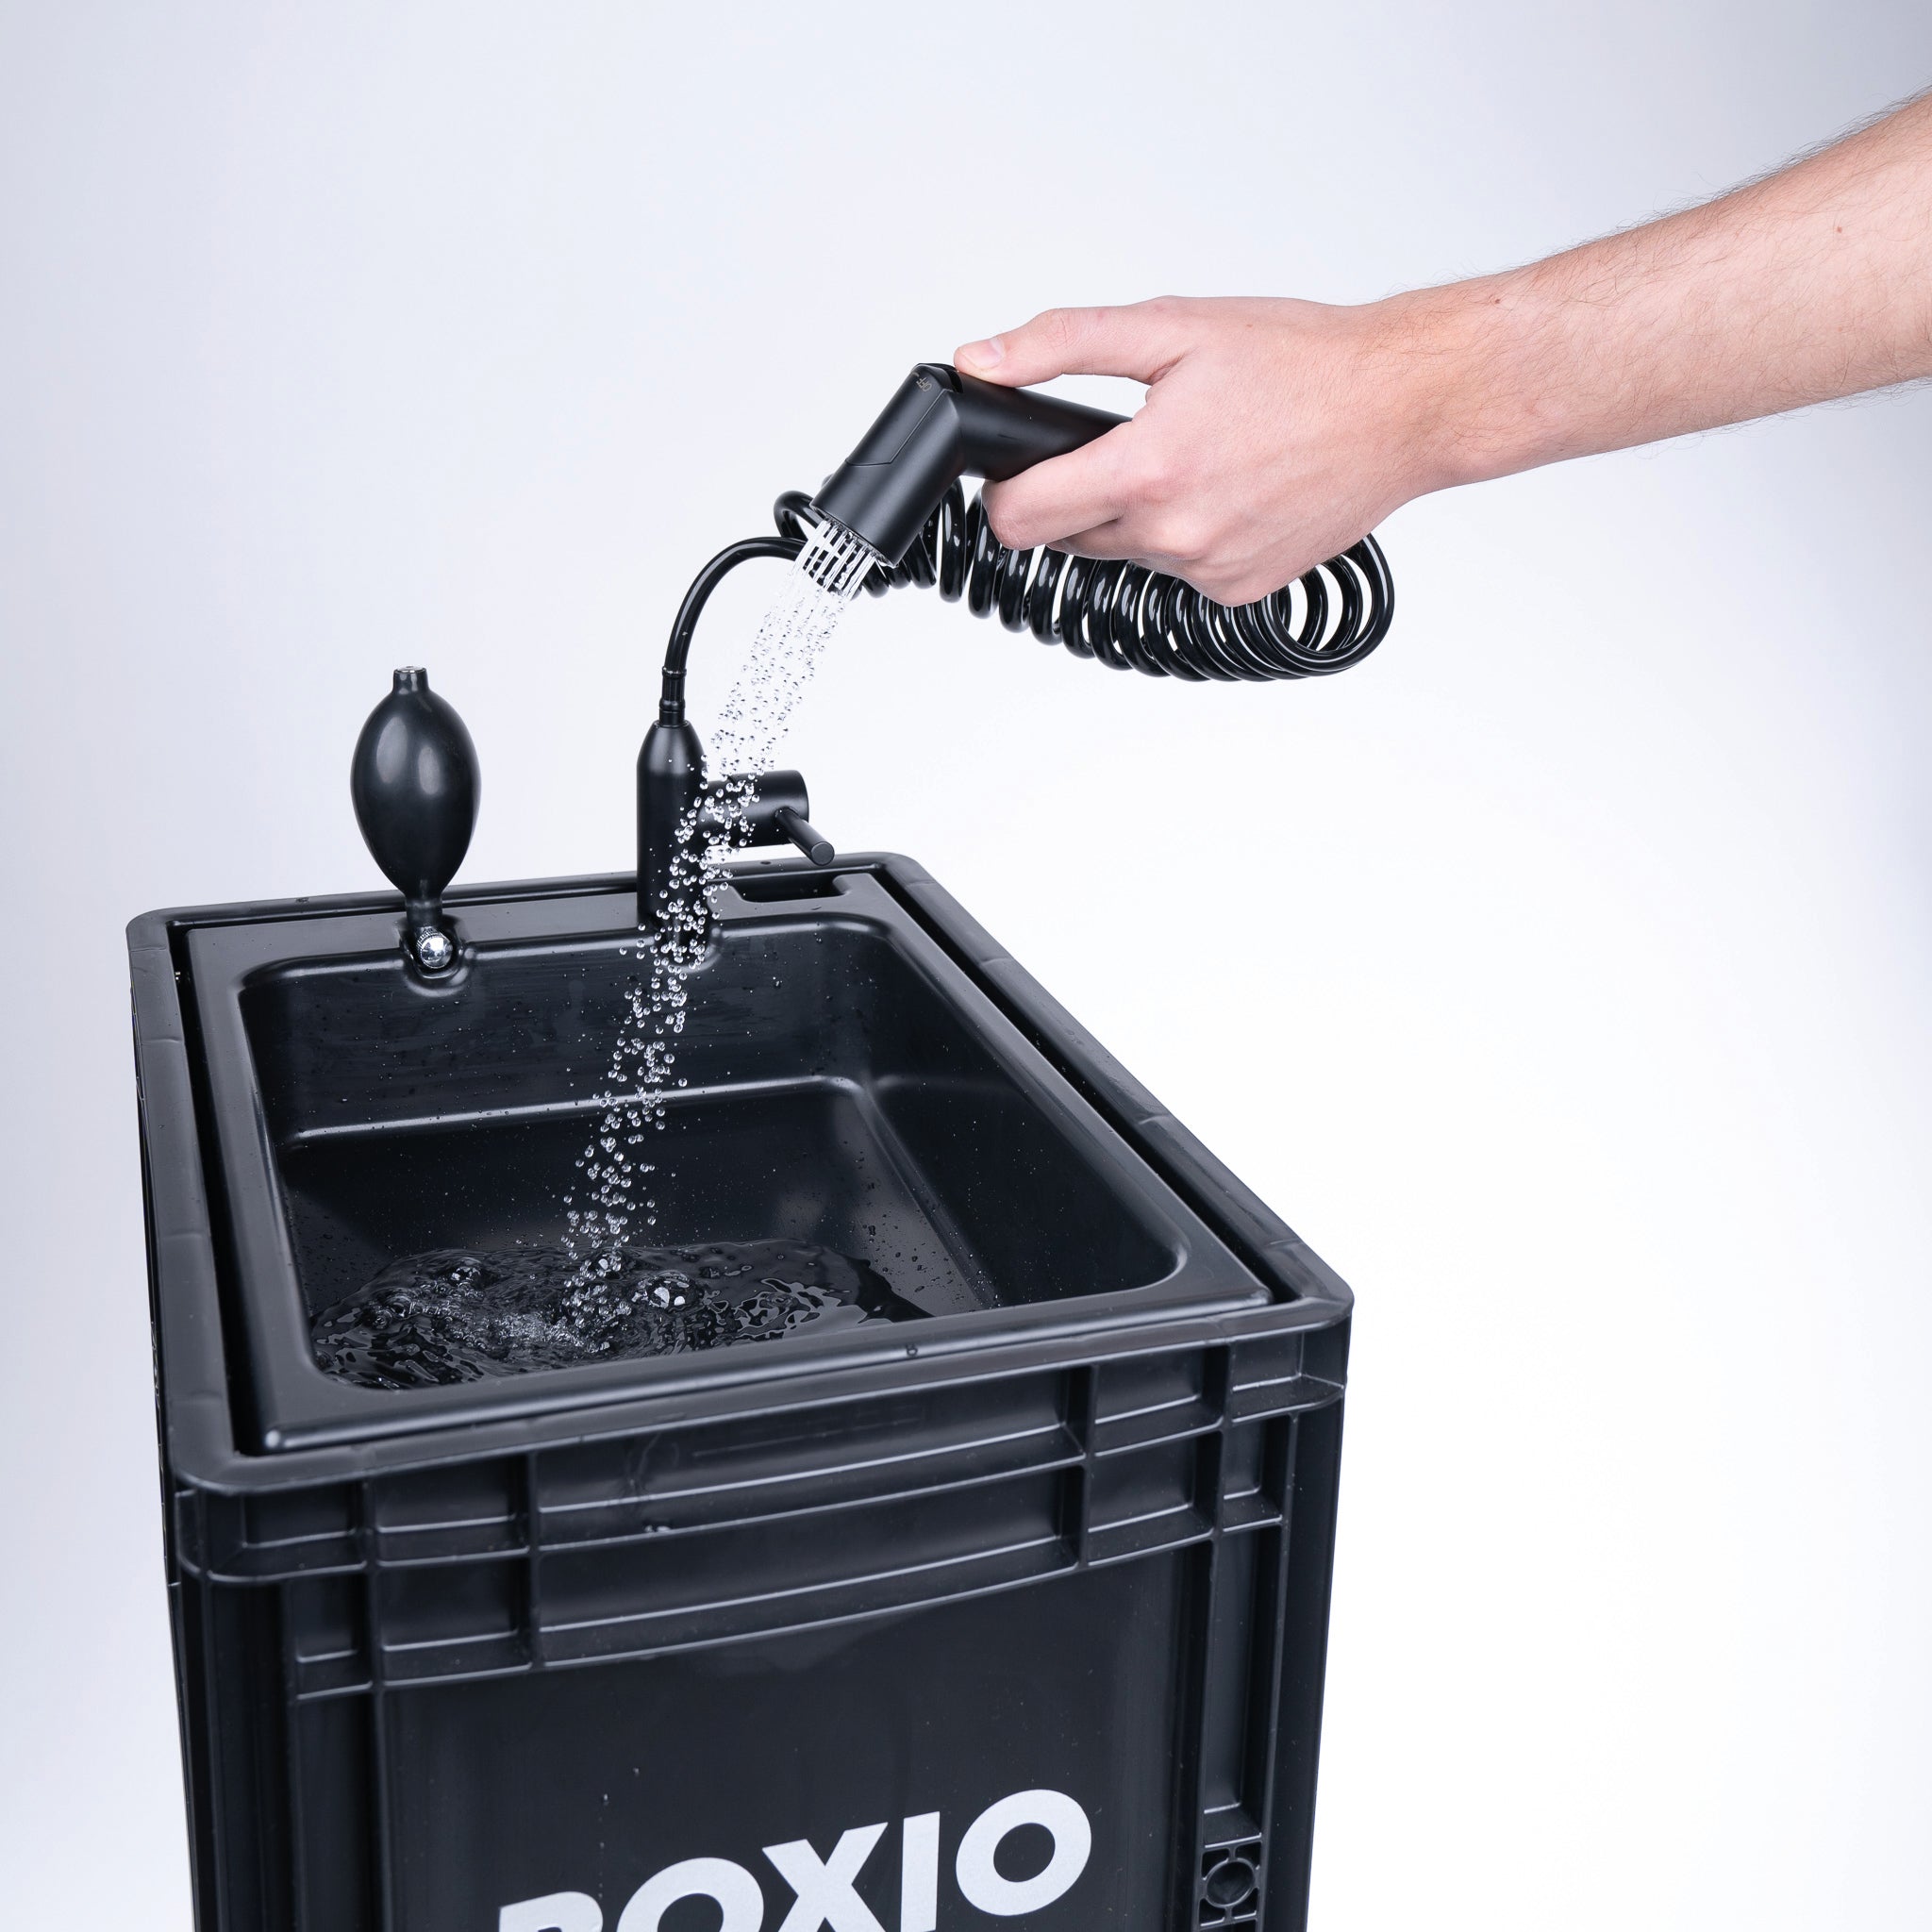 BOXIO - Wash Plus - Portable Camping Sink Starter Set